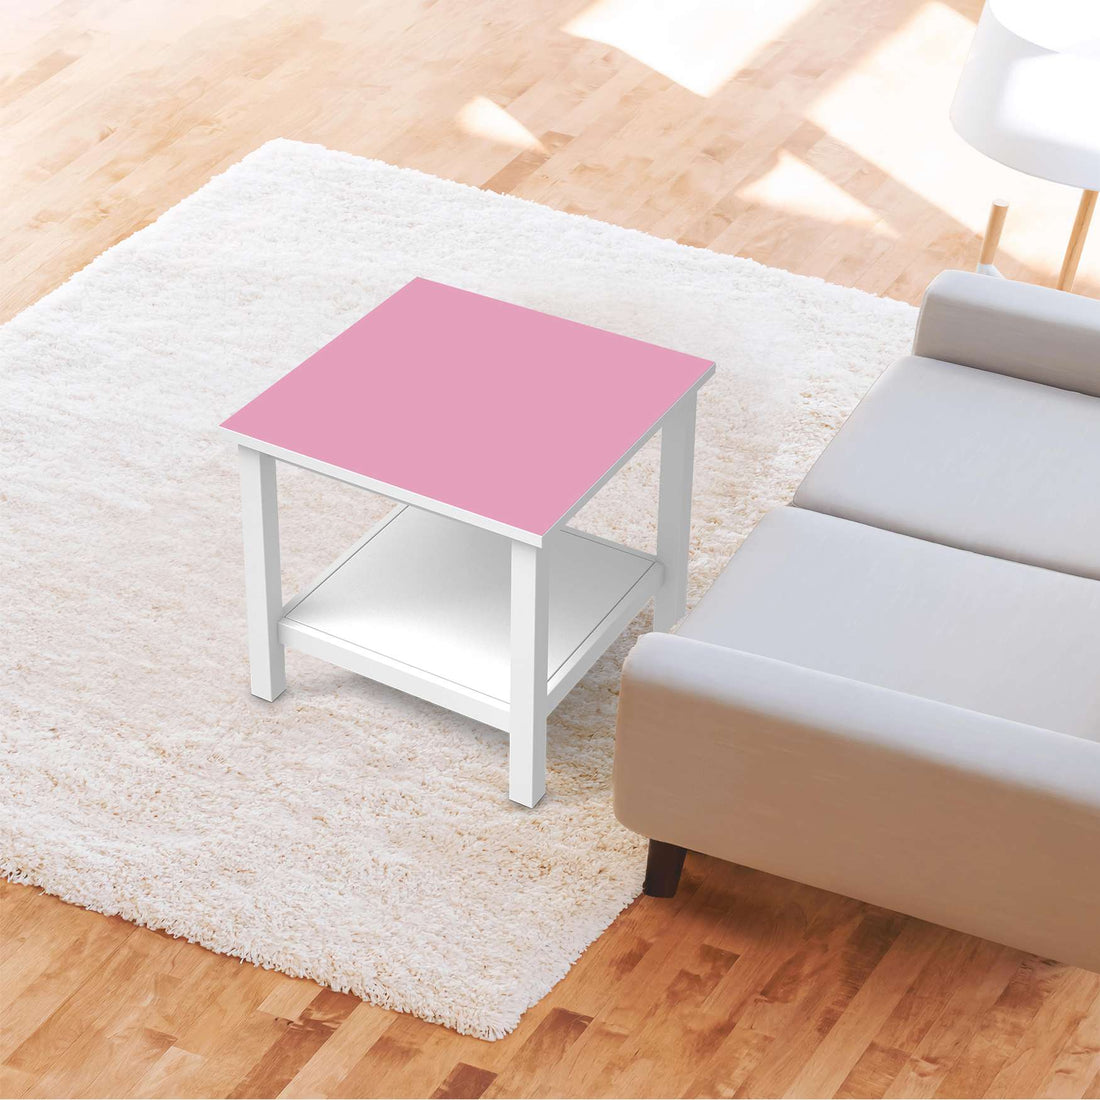 Möbel Klebefolie Pink Light - IKEA Hemnes Beistelltisch 55x55 cm - Wohnzimmer